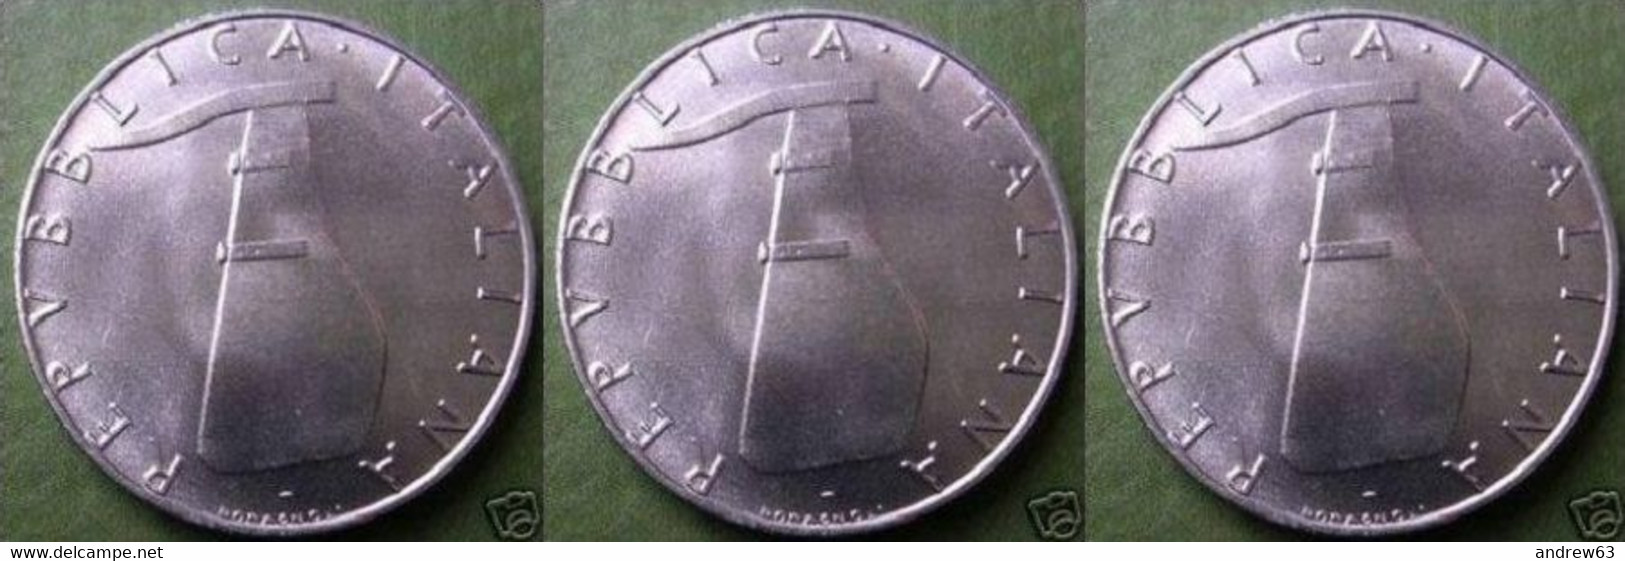 ITALIA - Lire 5 1984 - FDC/Unc Da Rotolino/from Roll 3 Monete/3 Coins - 5 Lire